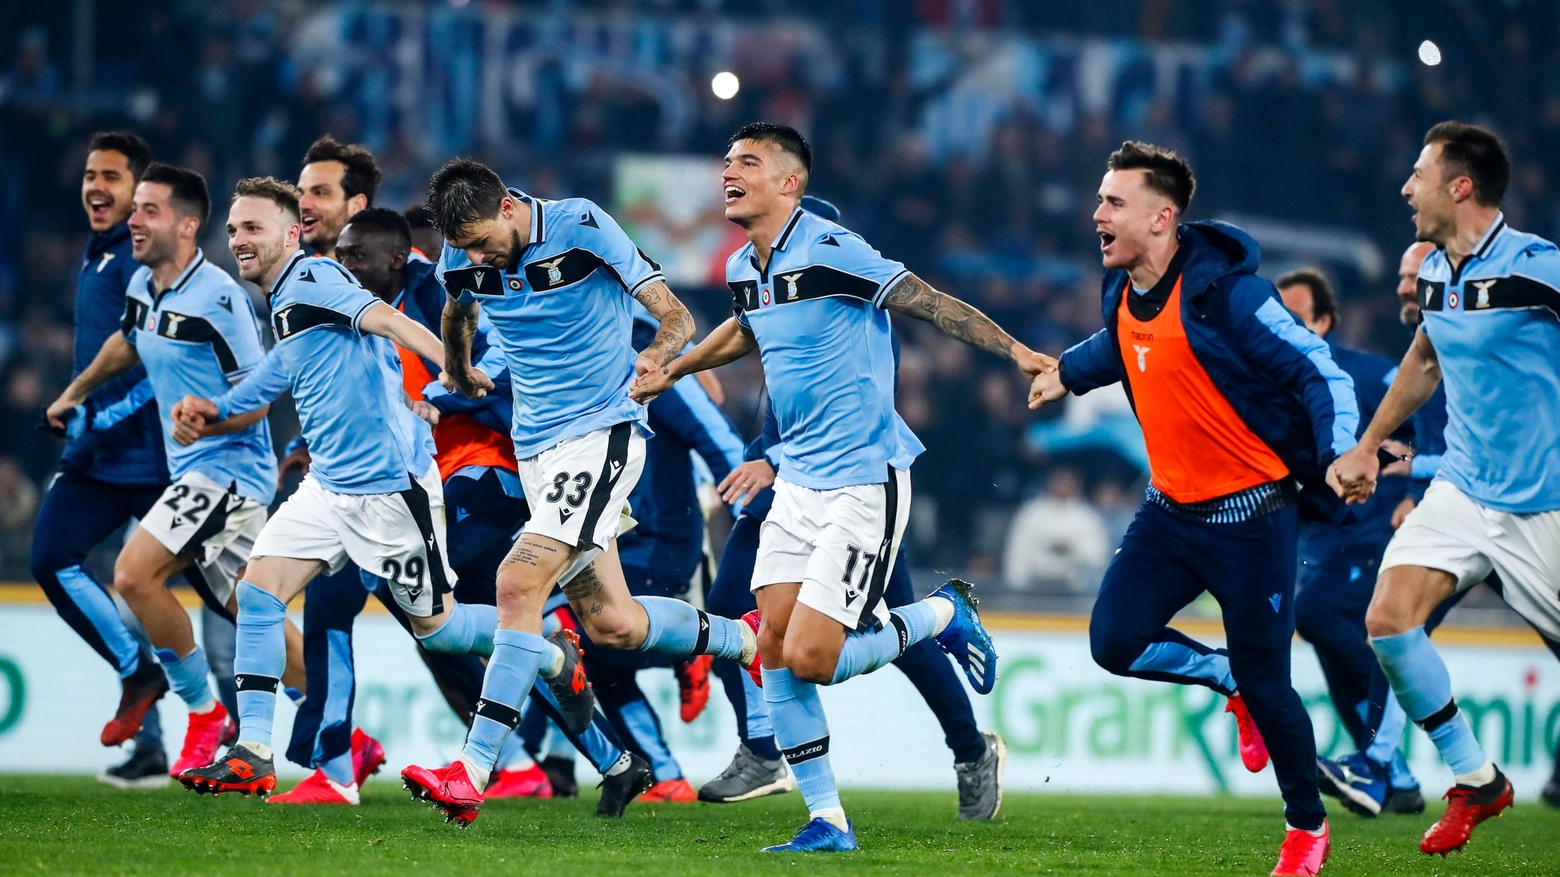 L'esultanza dei giocatori della Lazio dopo la vittoria sull'Inter